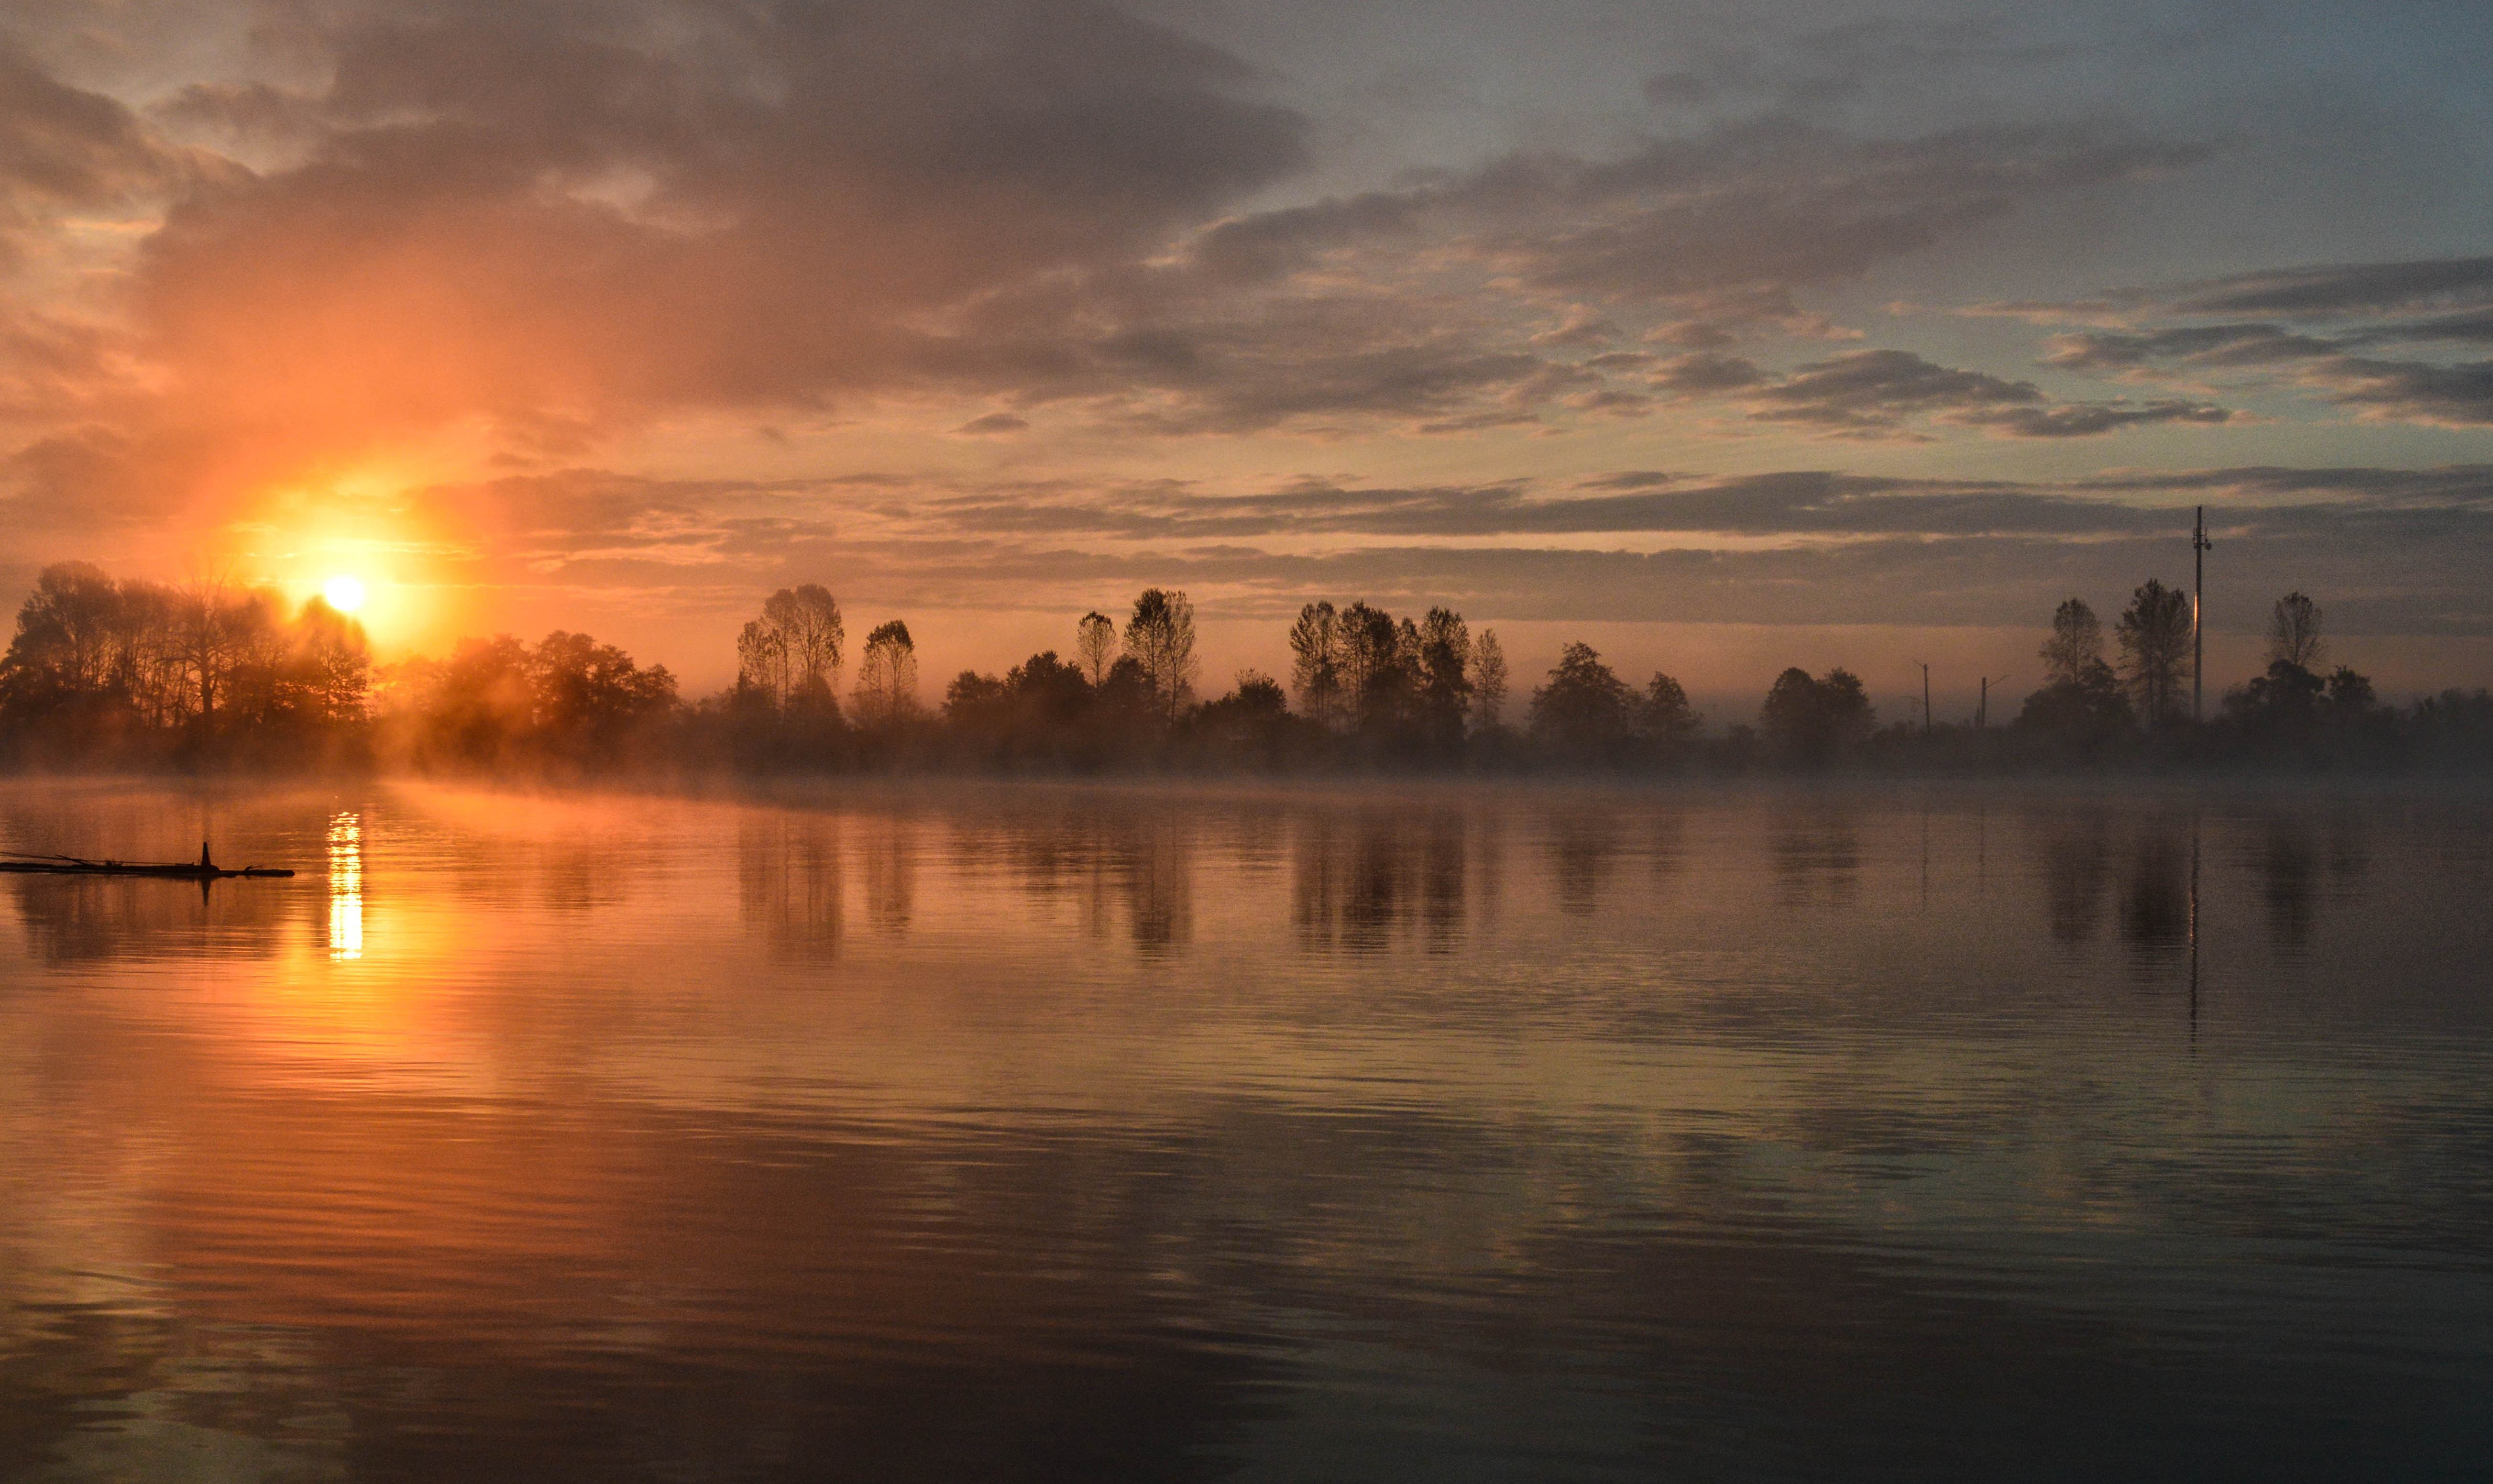 Foggy evening at the lake / 5213 x 3103 / Sunriseandsunset ...